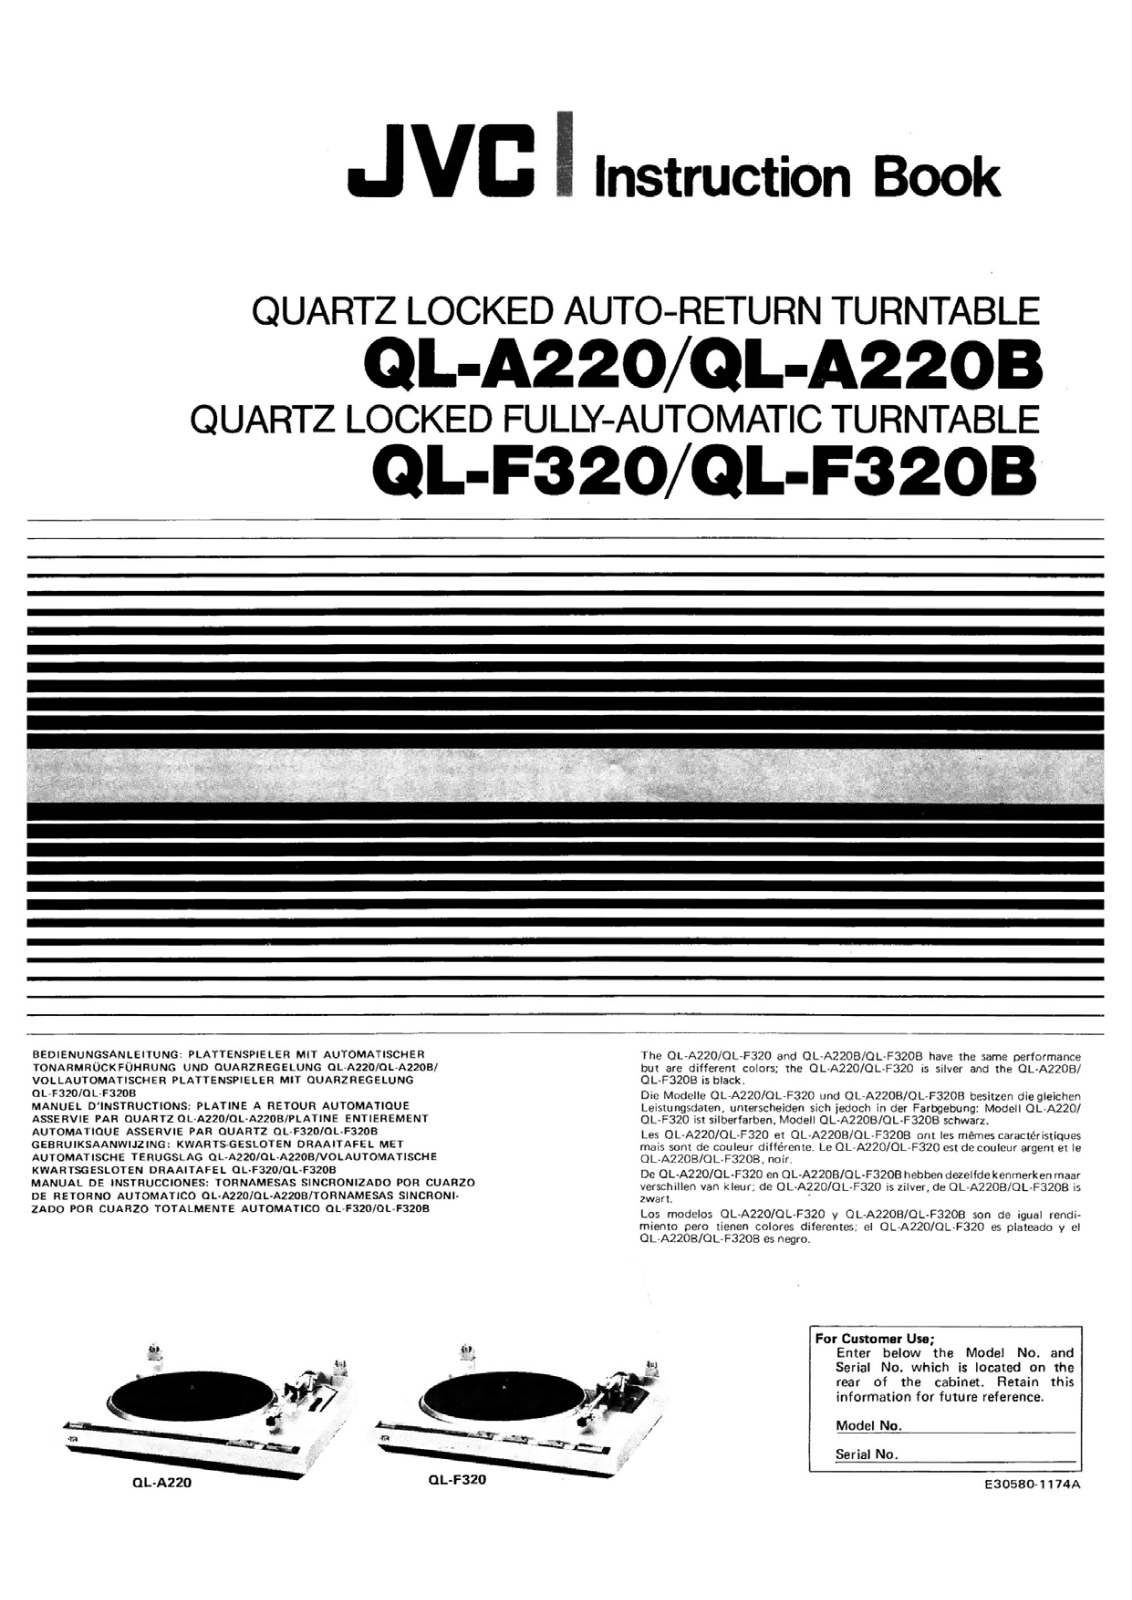 Jvc QL-A220 Owners Manual